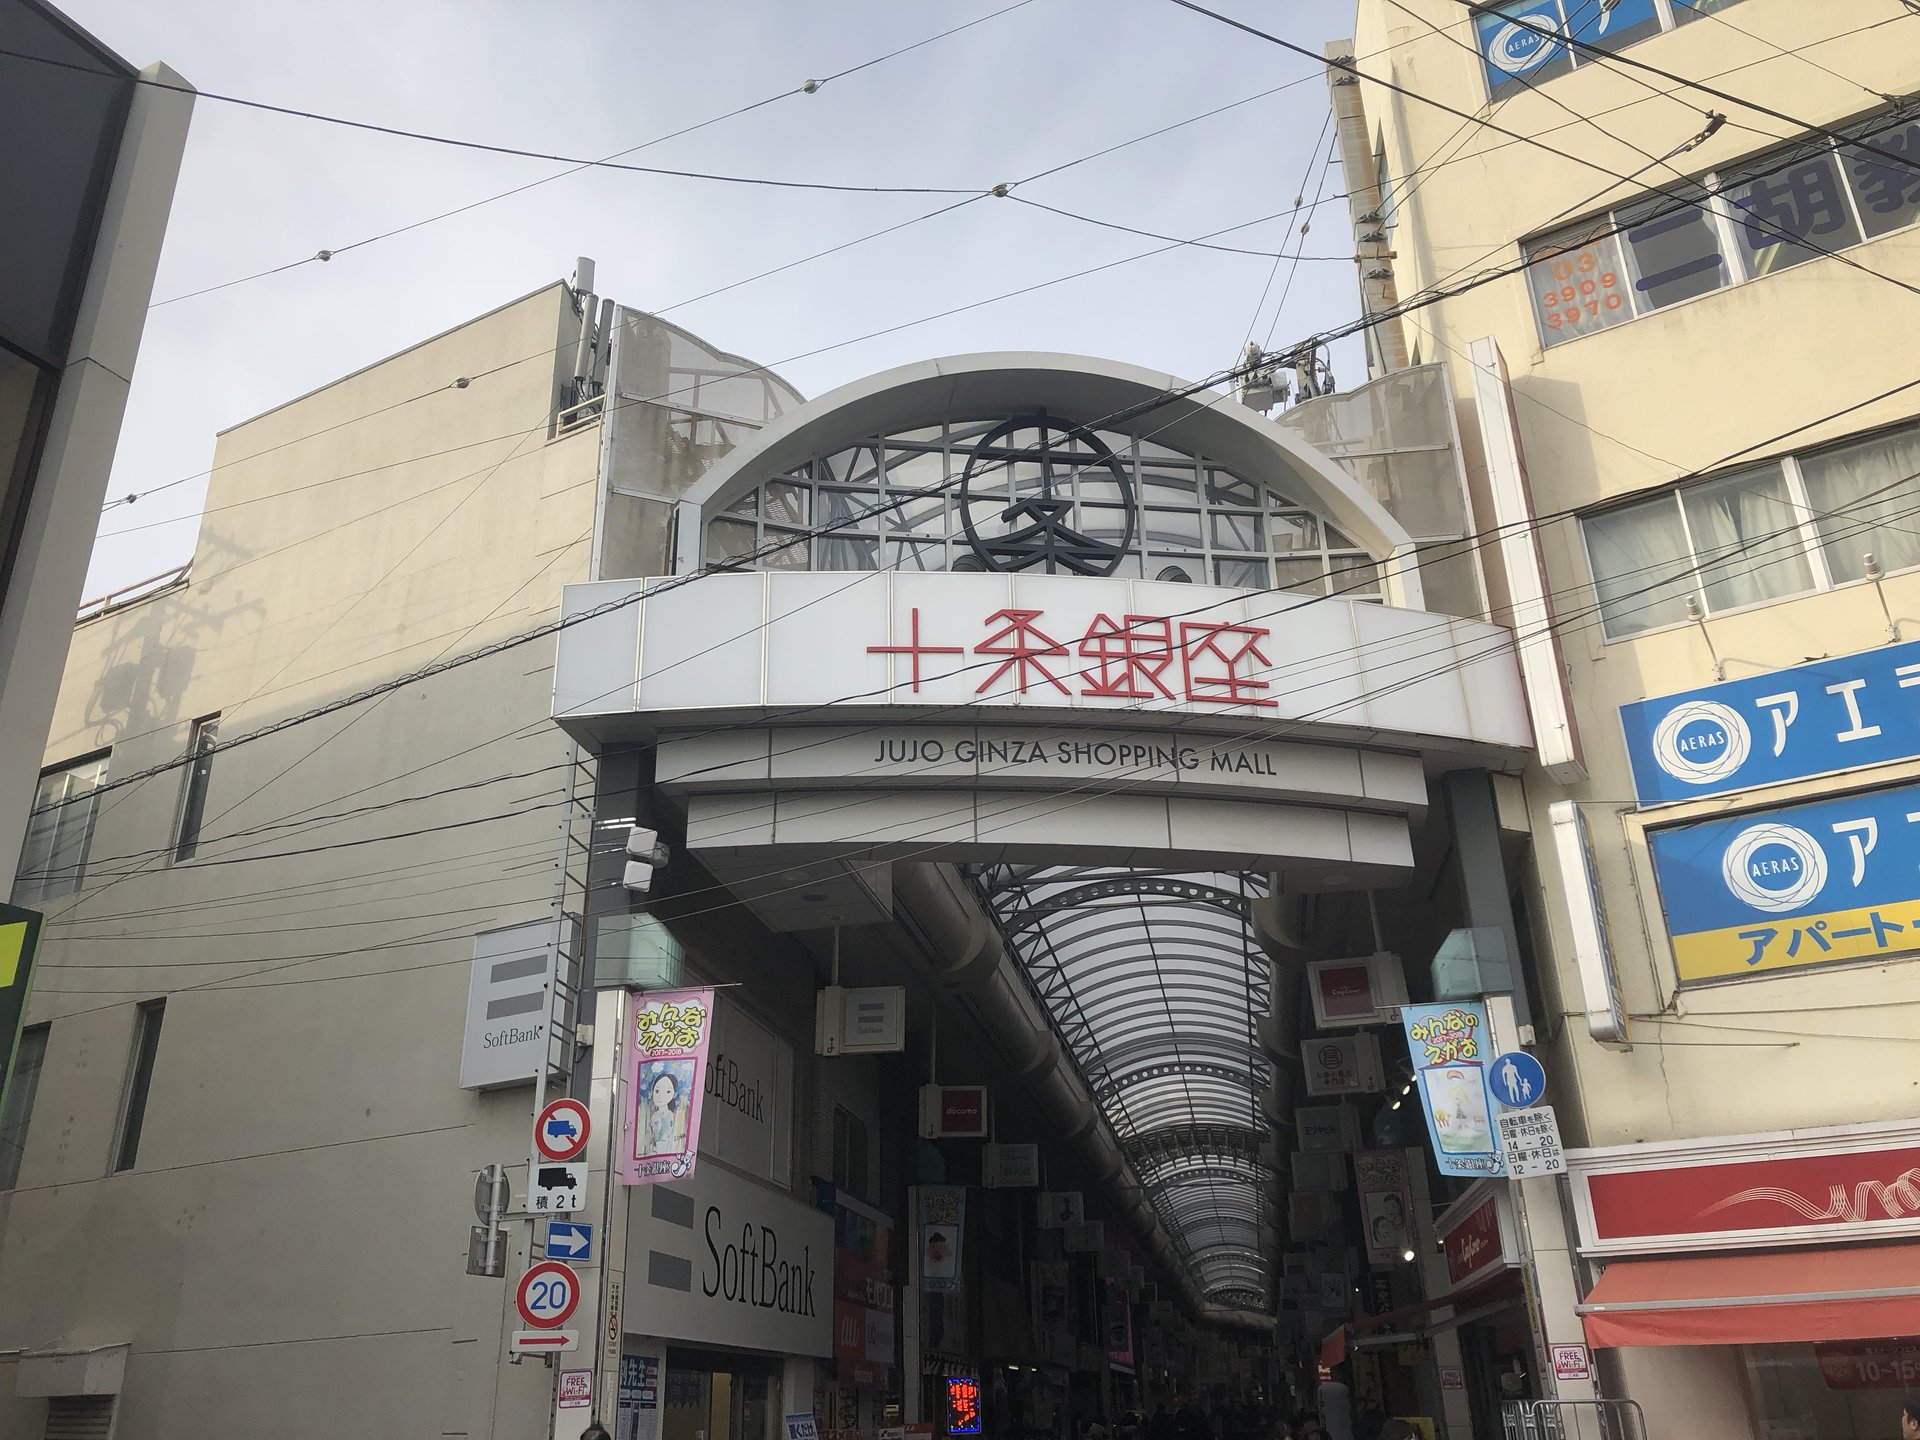 昔懐かしい東京のアングラ商店街「十条銀座」はお散歩に最適